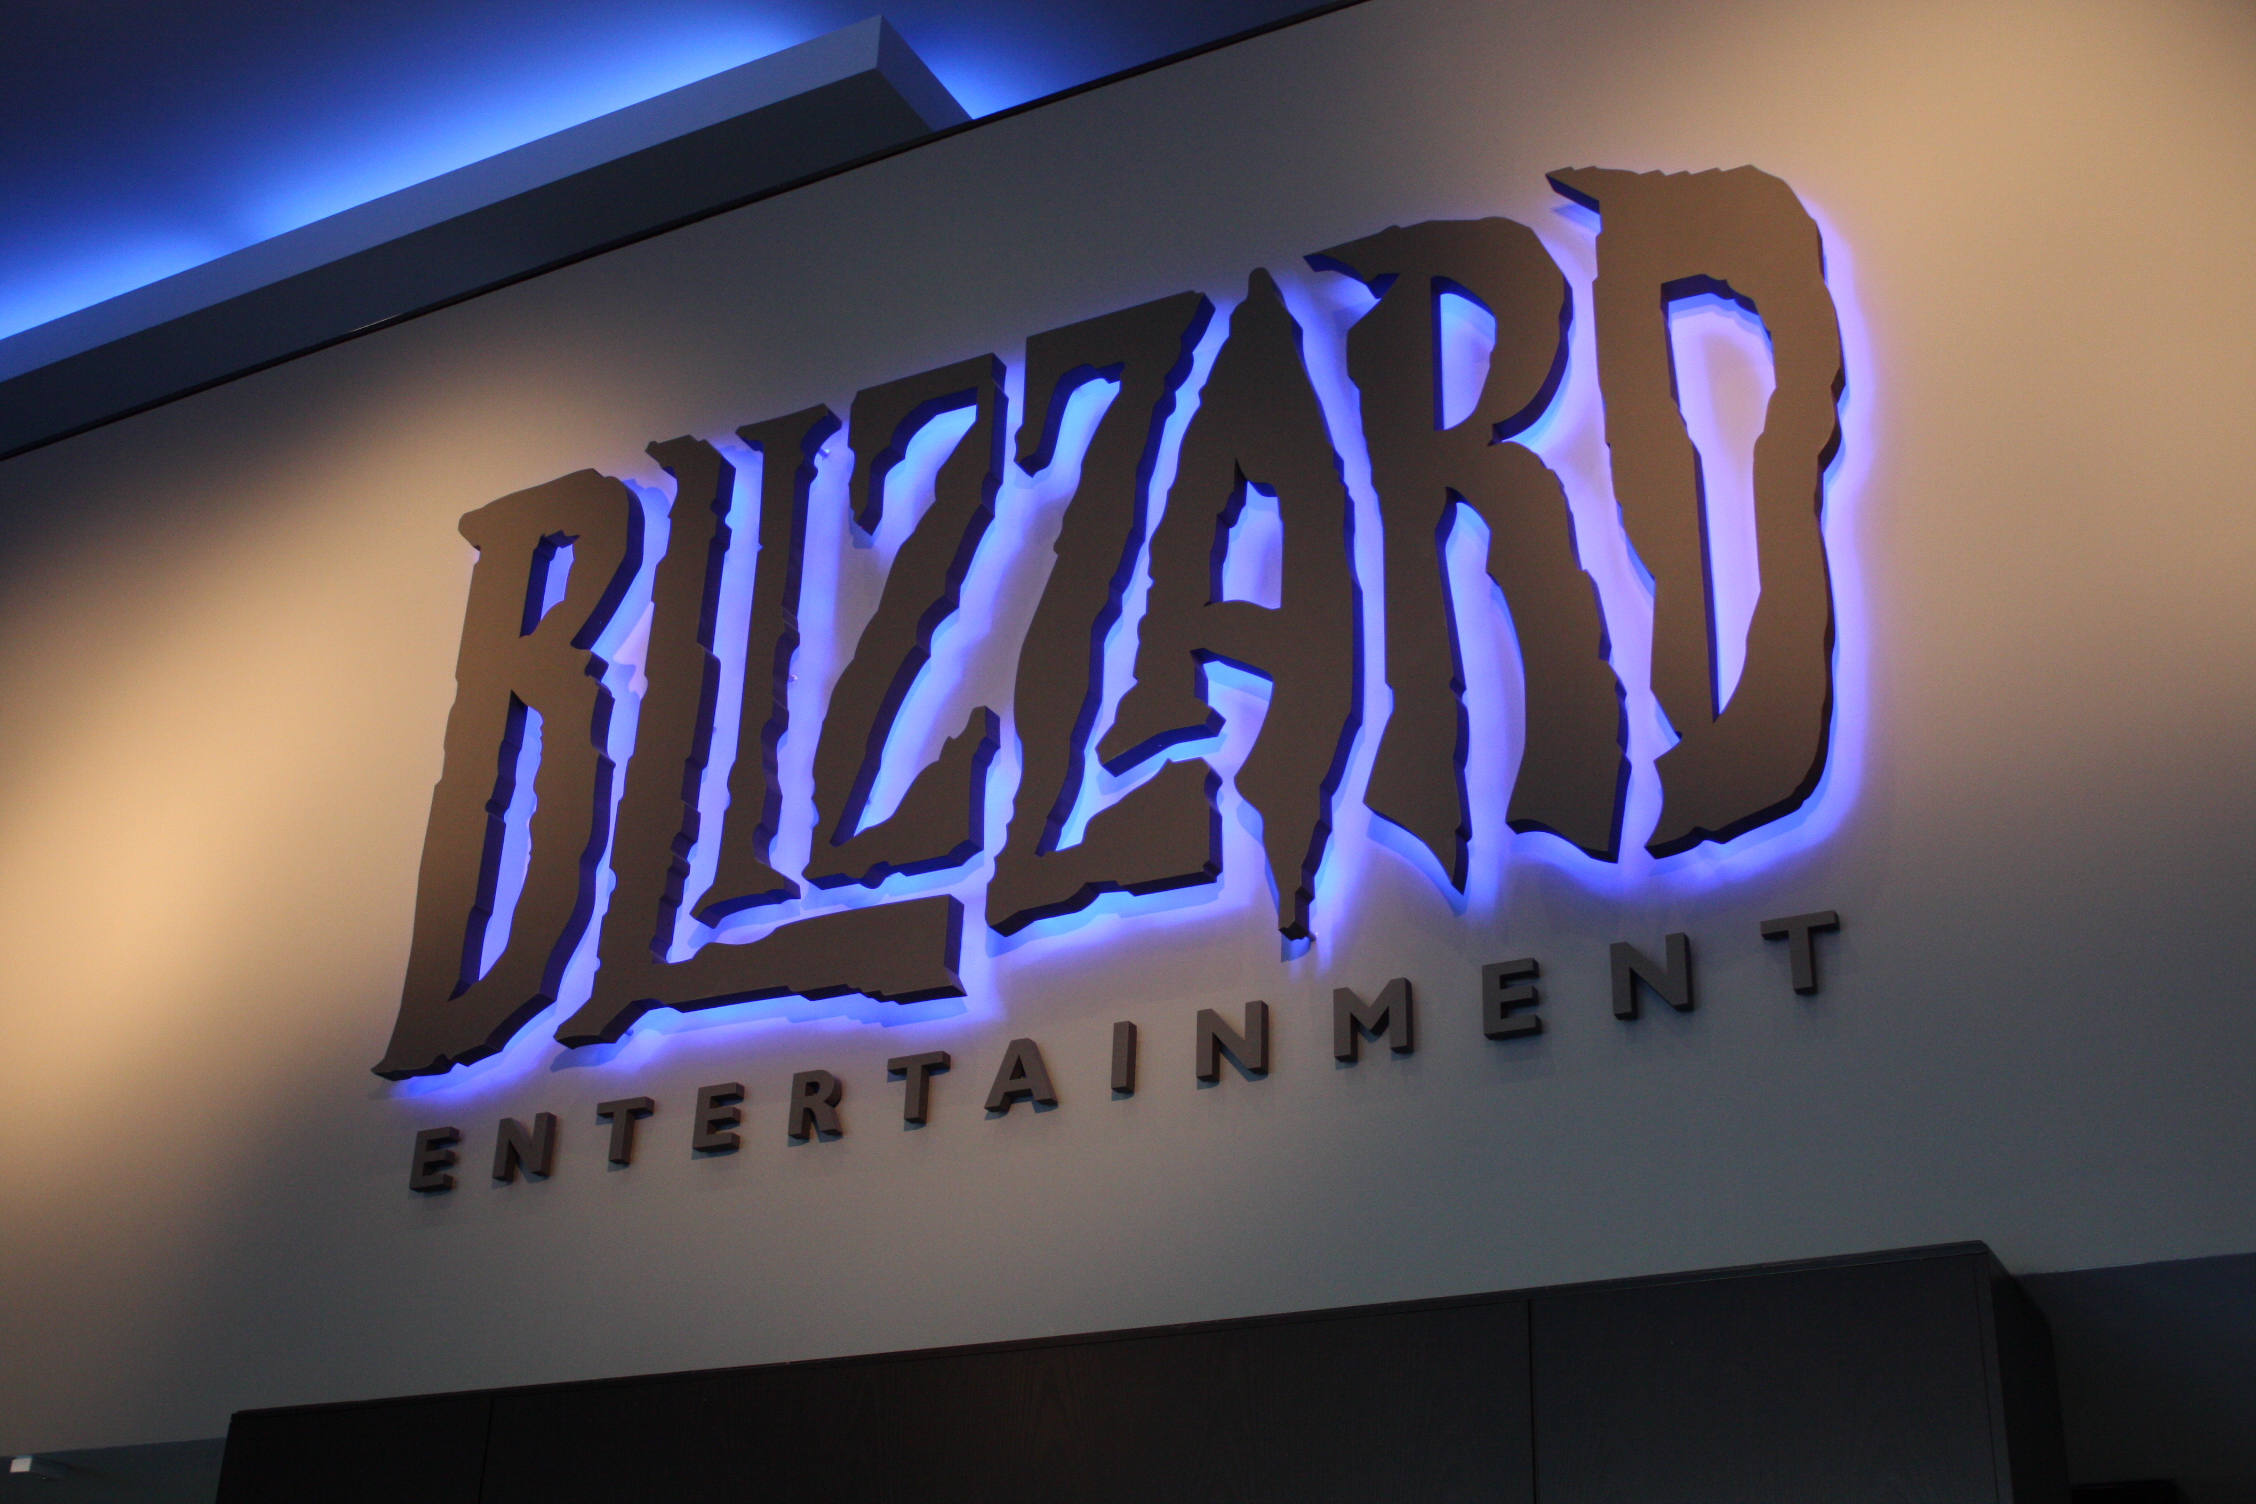 Photo du hall d'entrée menant notamment au Musée Blizzard.